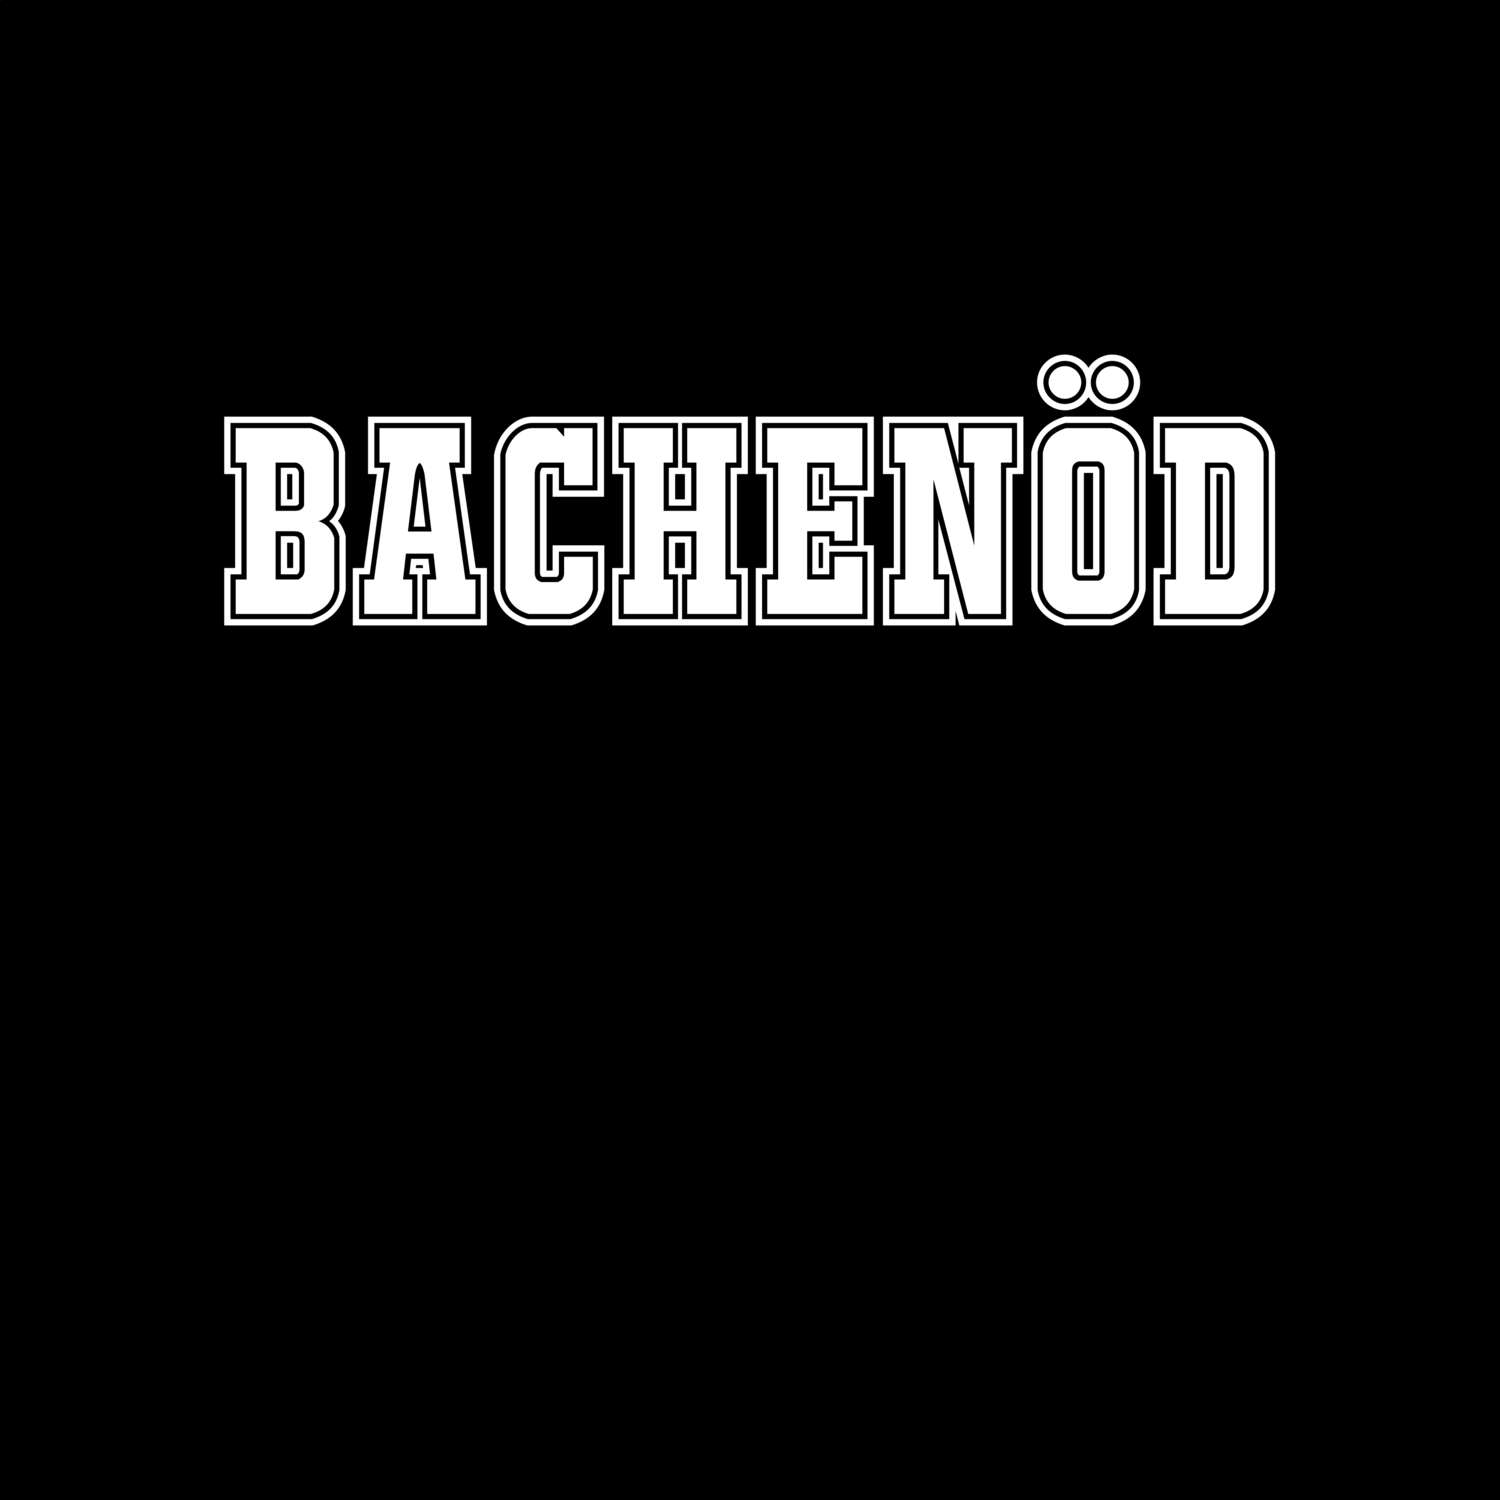 Bachenöd T-Shirt »Classic«